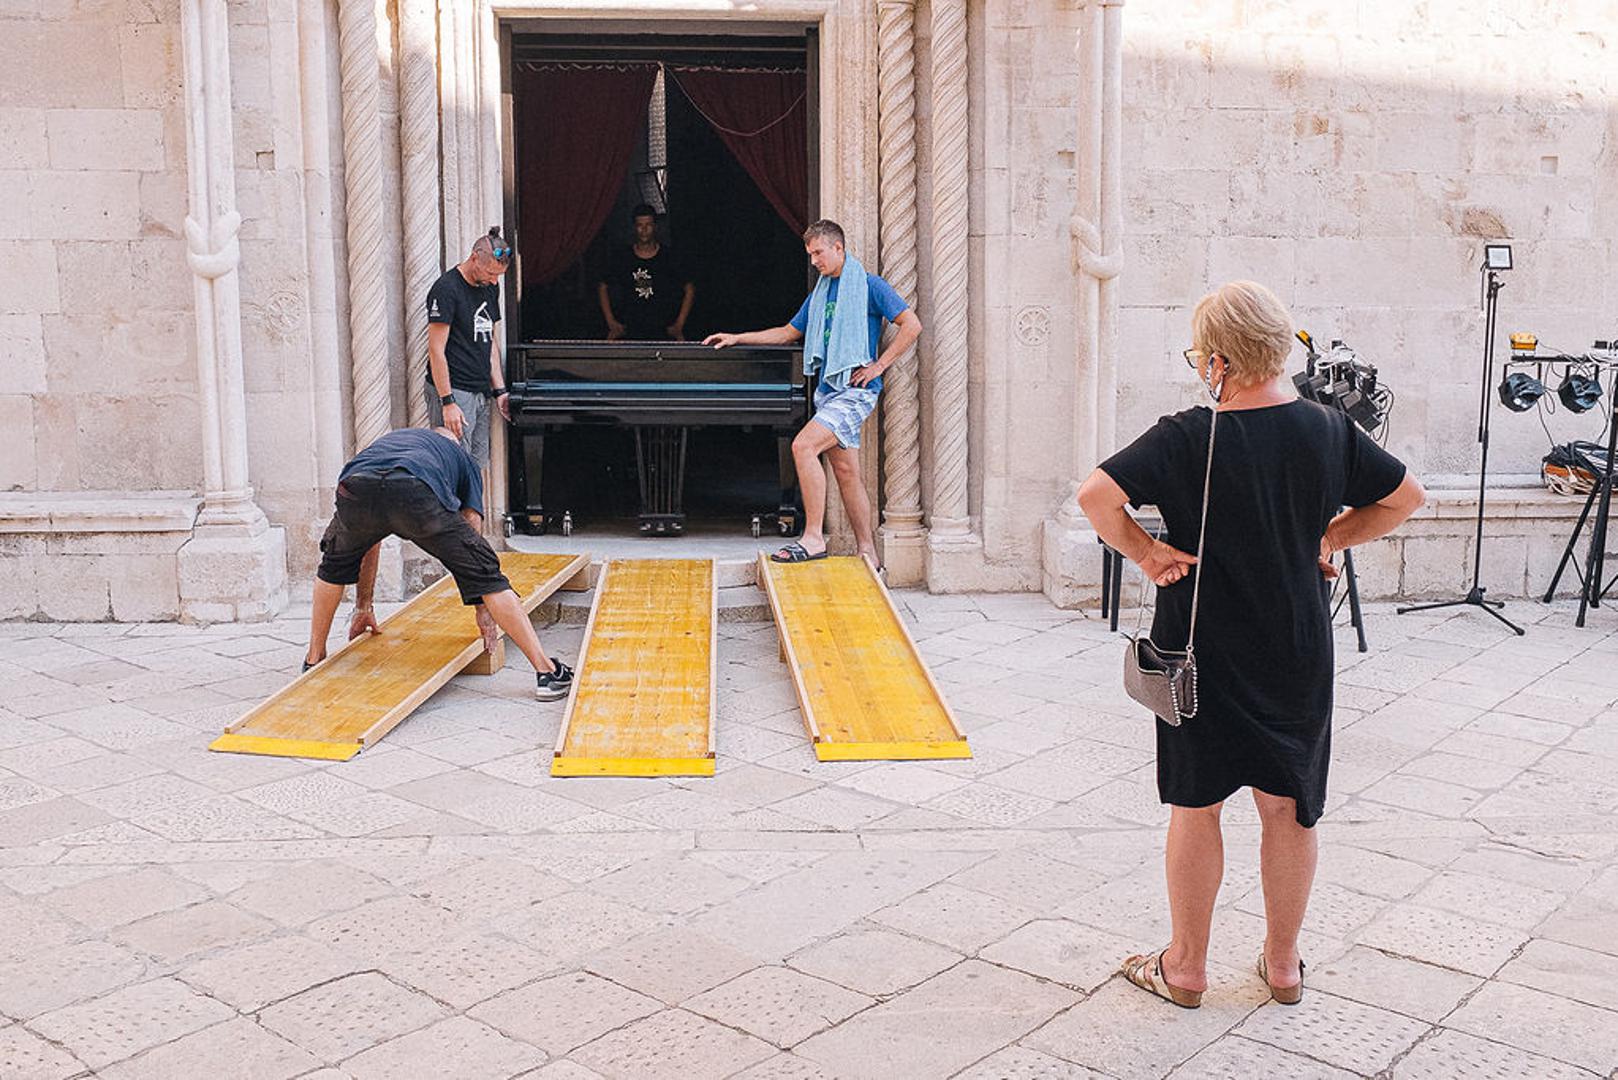 Iznošenje velikog koncertnog klavira iz katedrale na trg bio je zahtjevan logistički zadatak